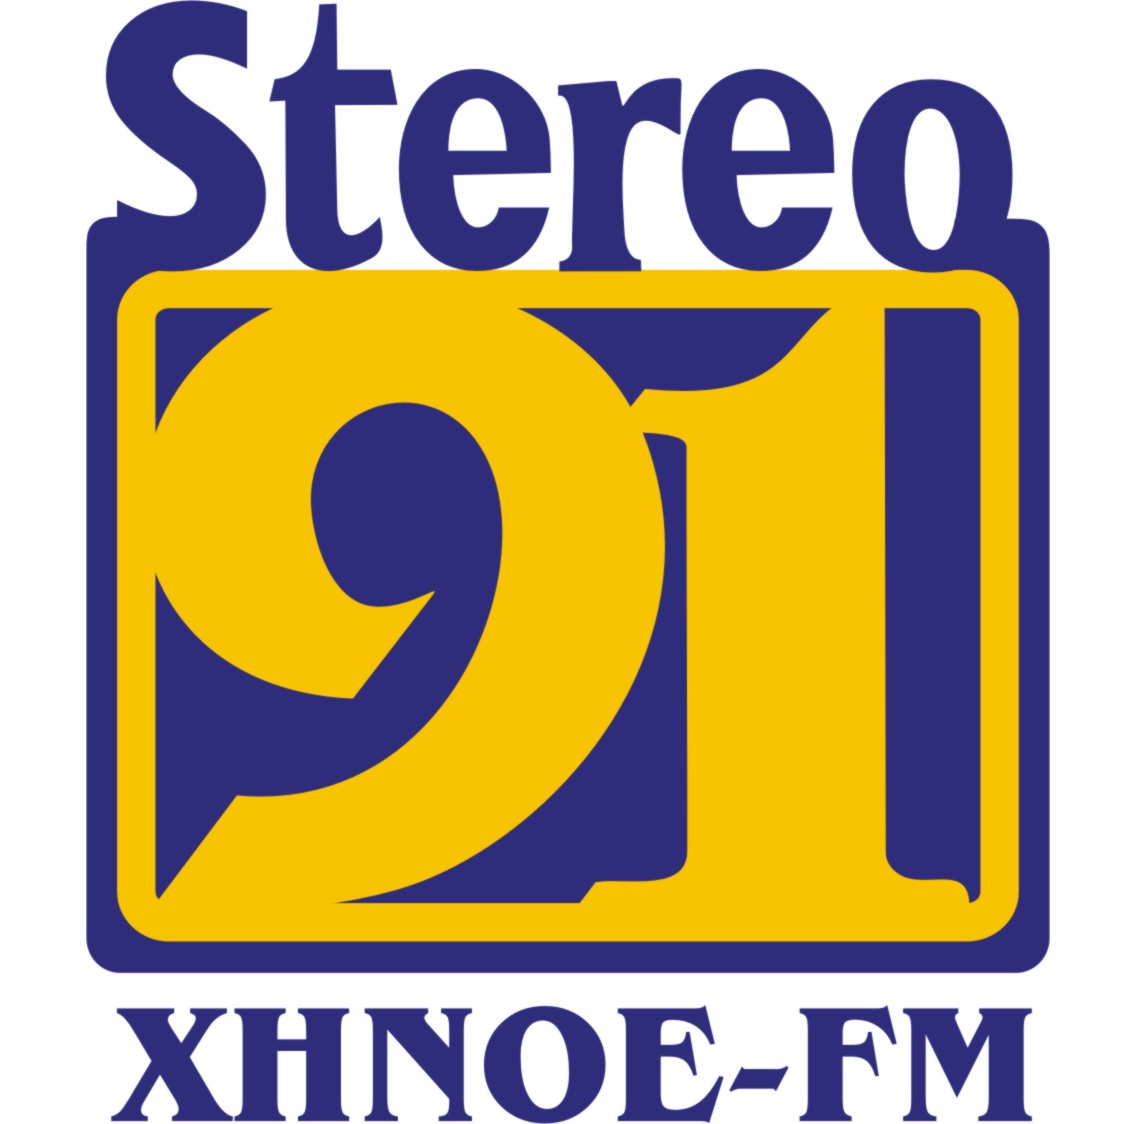 XHNOE-FM Stereo 91